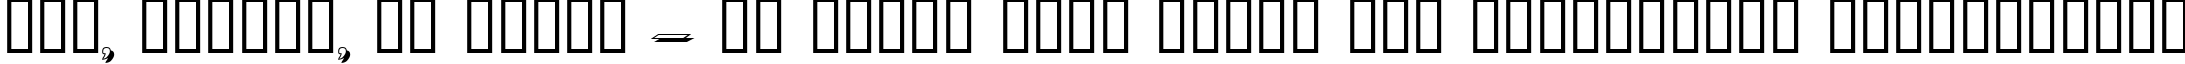 Пример написания шрифтом Dumbledor 3 Shadow текста на украинском